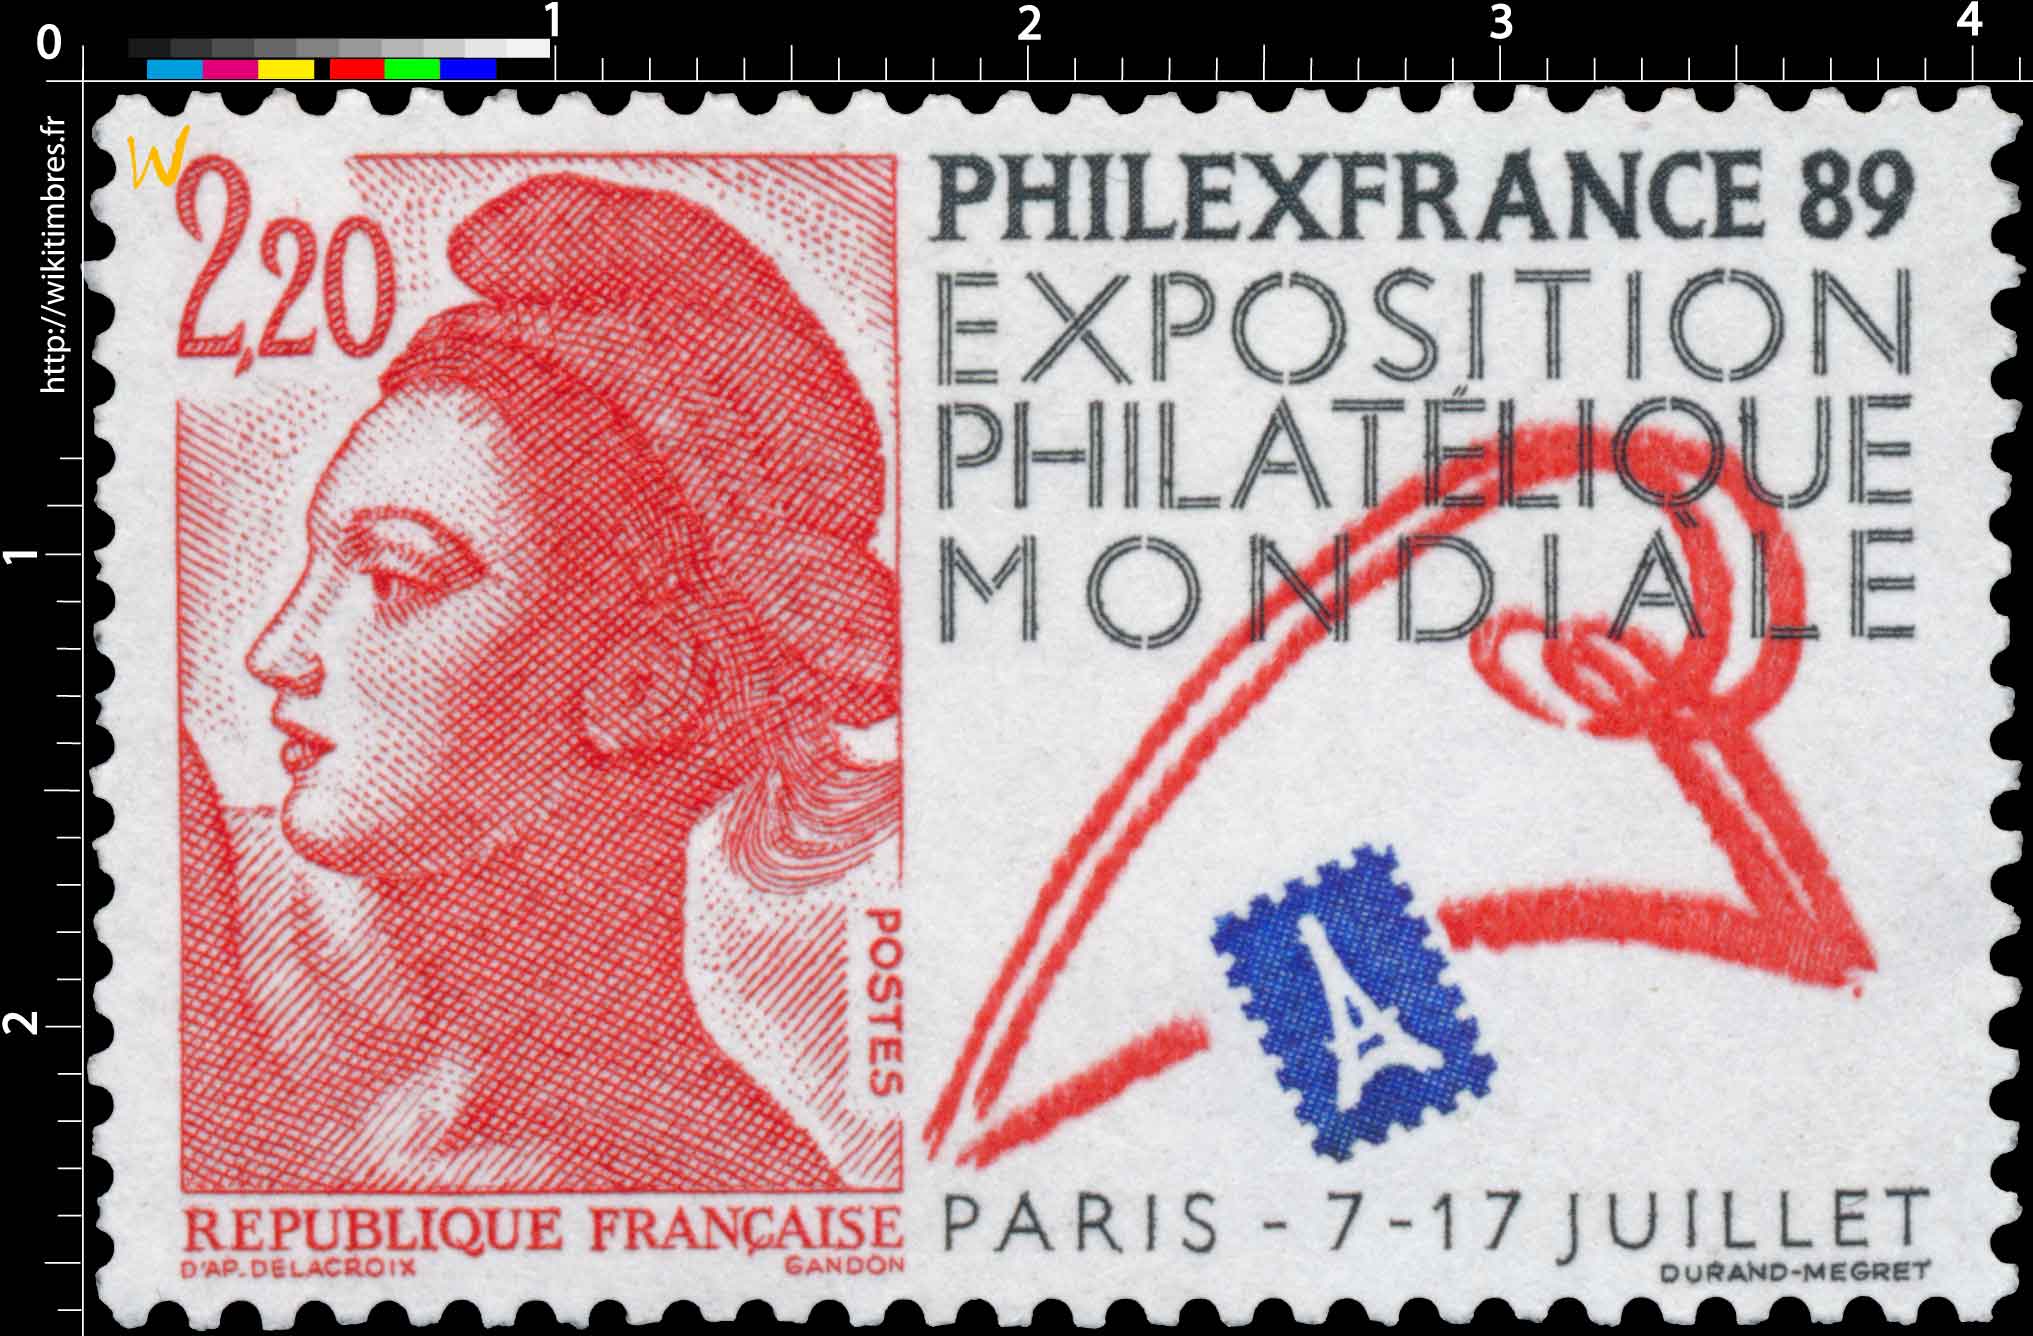 PHILEXFRANCE 89 EXPOSITION PHILATÉLIQUE MONDIALE PARIS - 7 - 17 JUILLET